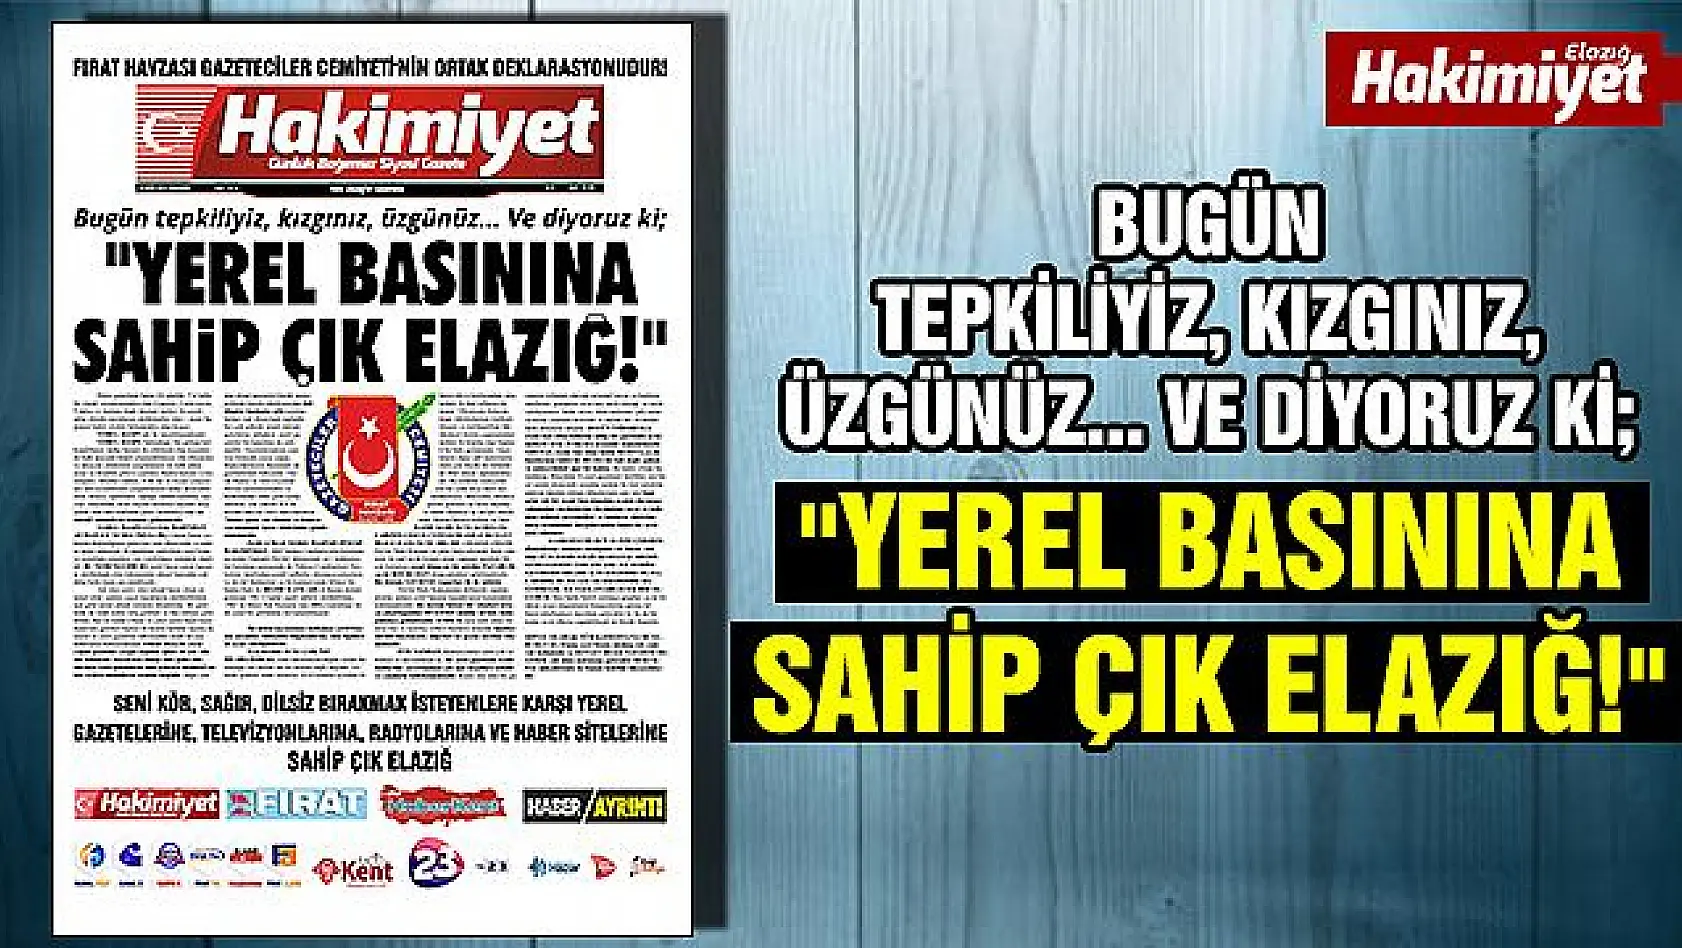 'YEREL BASININA SAHİP ÇIK ELAZIĞ!'